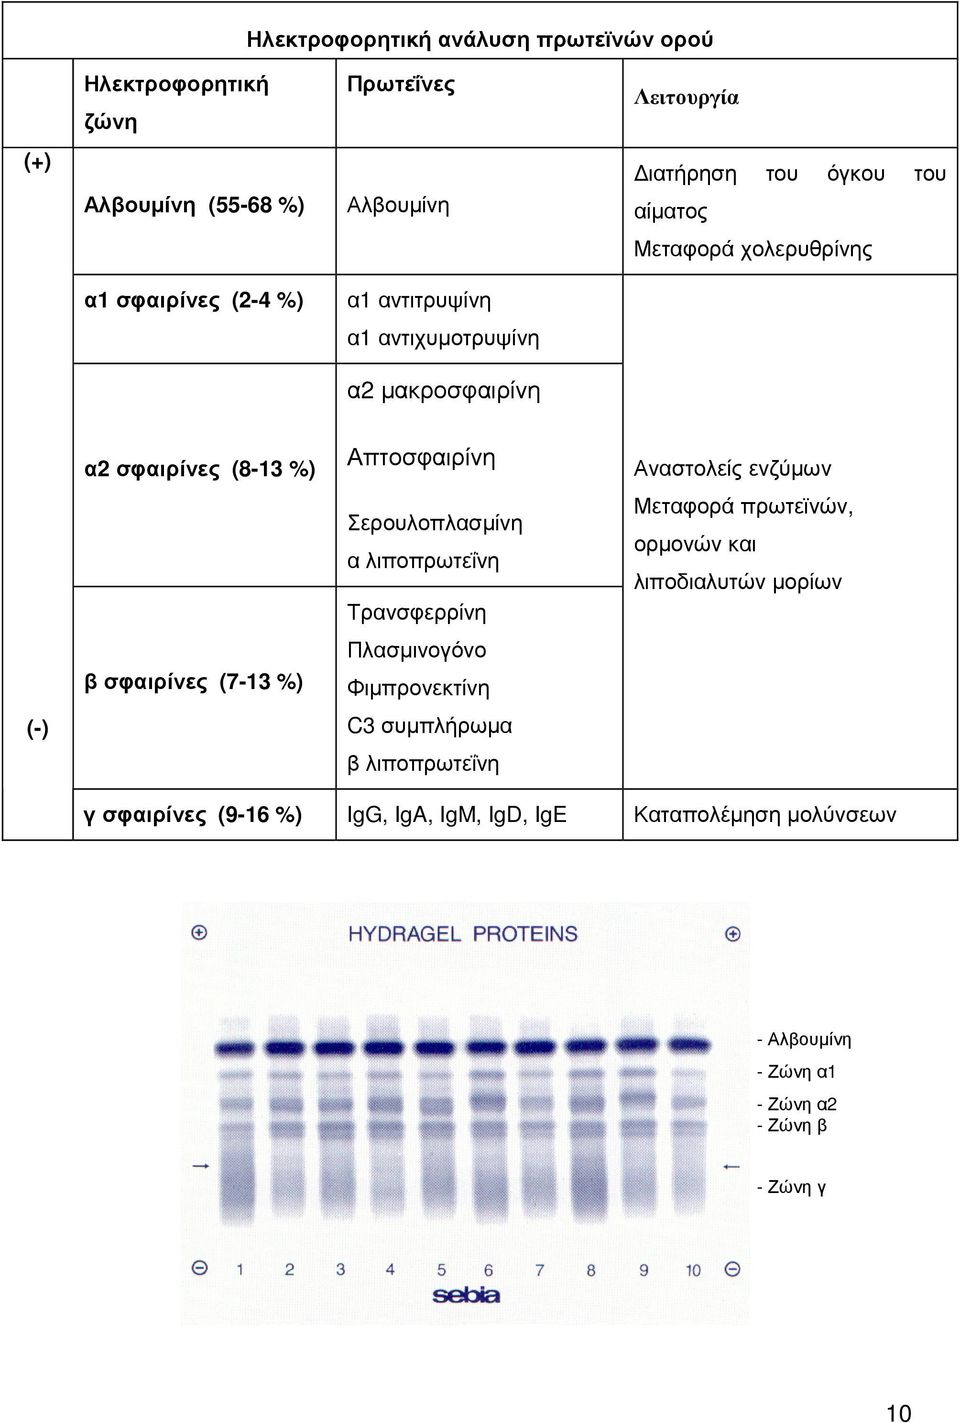 Σερουλοπλασµίνη α λιποπρωτεΐνη Τρανσφερρίνη Μεταφορά πρωτεϊνών, ορµονών και λιποδιαλυτών µορίων β σφαιρίνες (7-13 %) Πλασµινογόνο Φιµπρονεκτίνη (-)